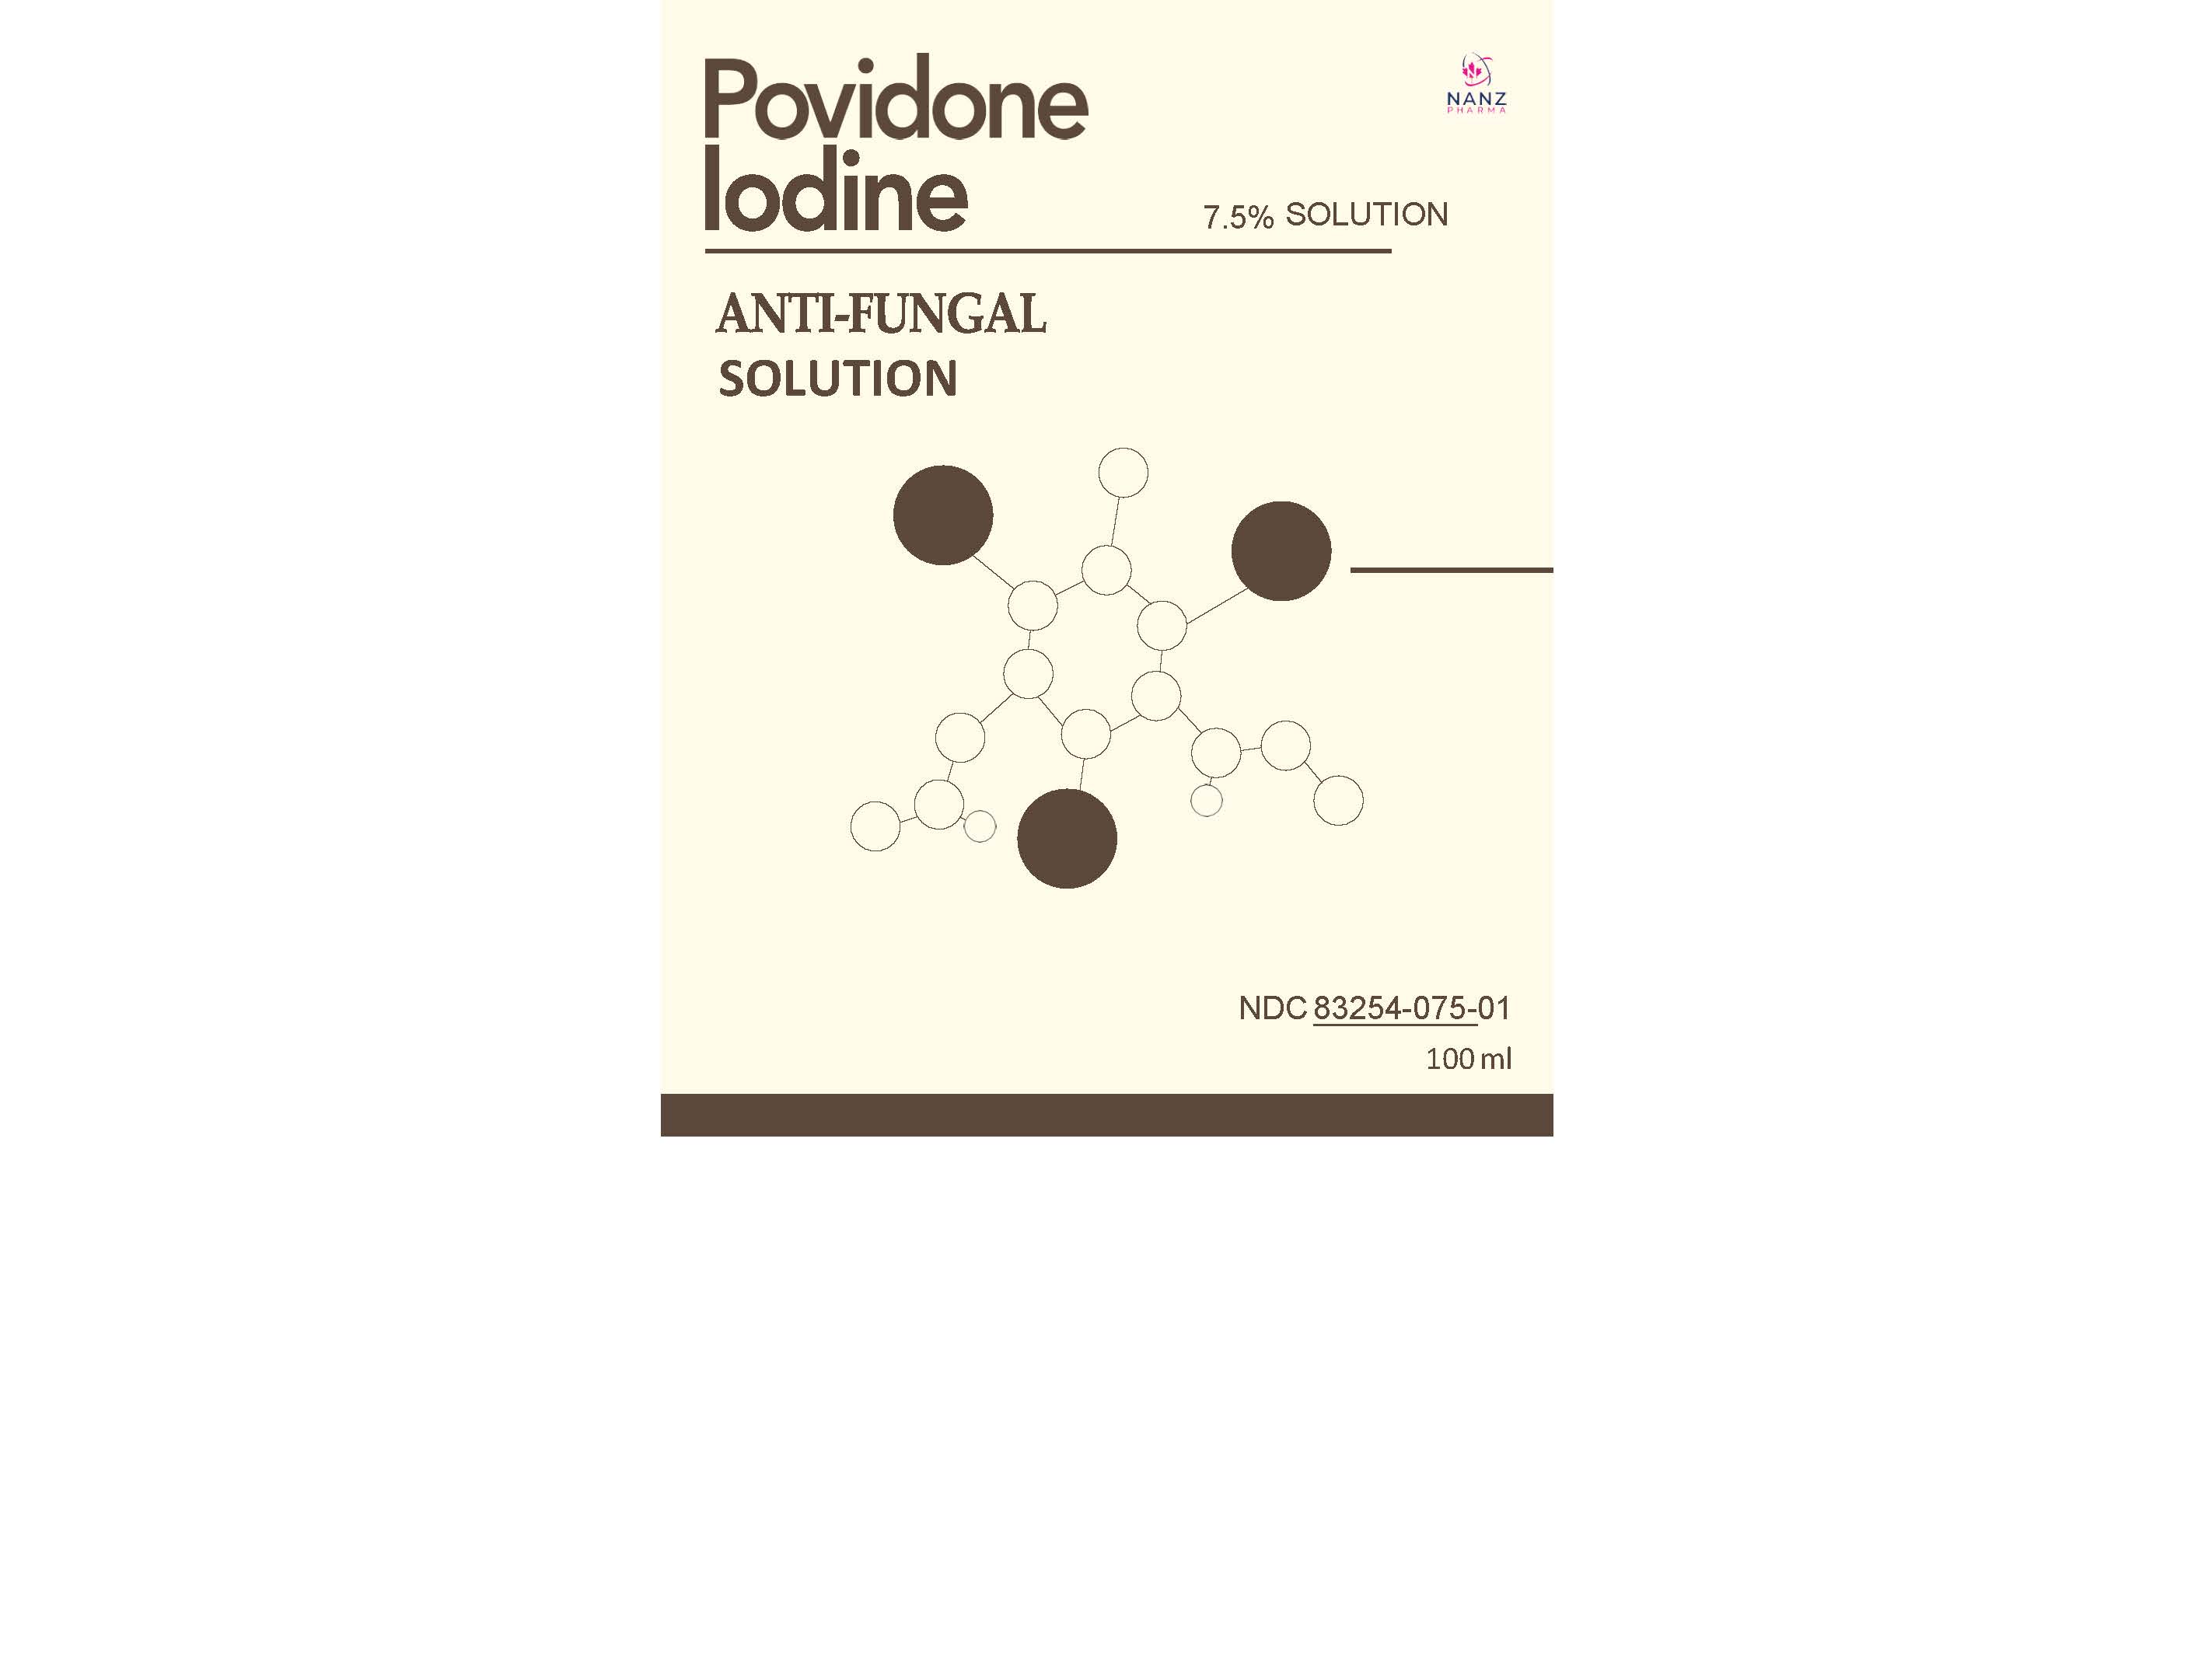 Label for all povidone iodine 7.5 percent